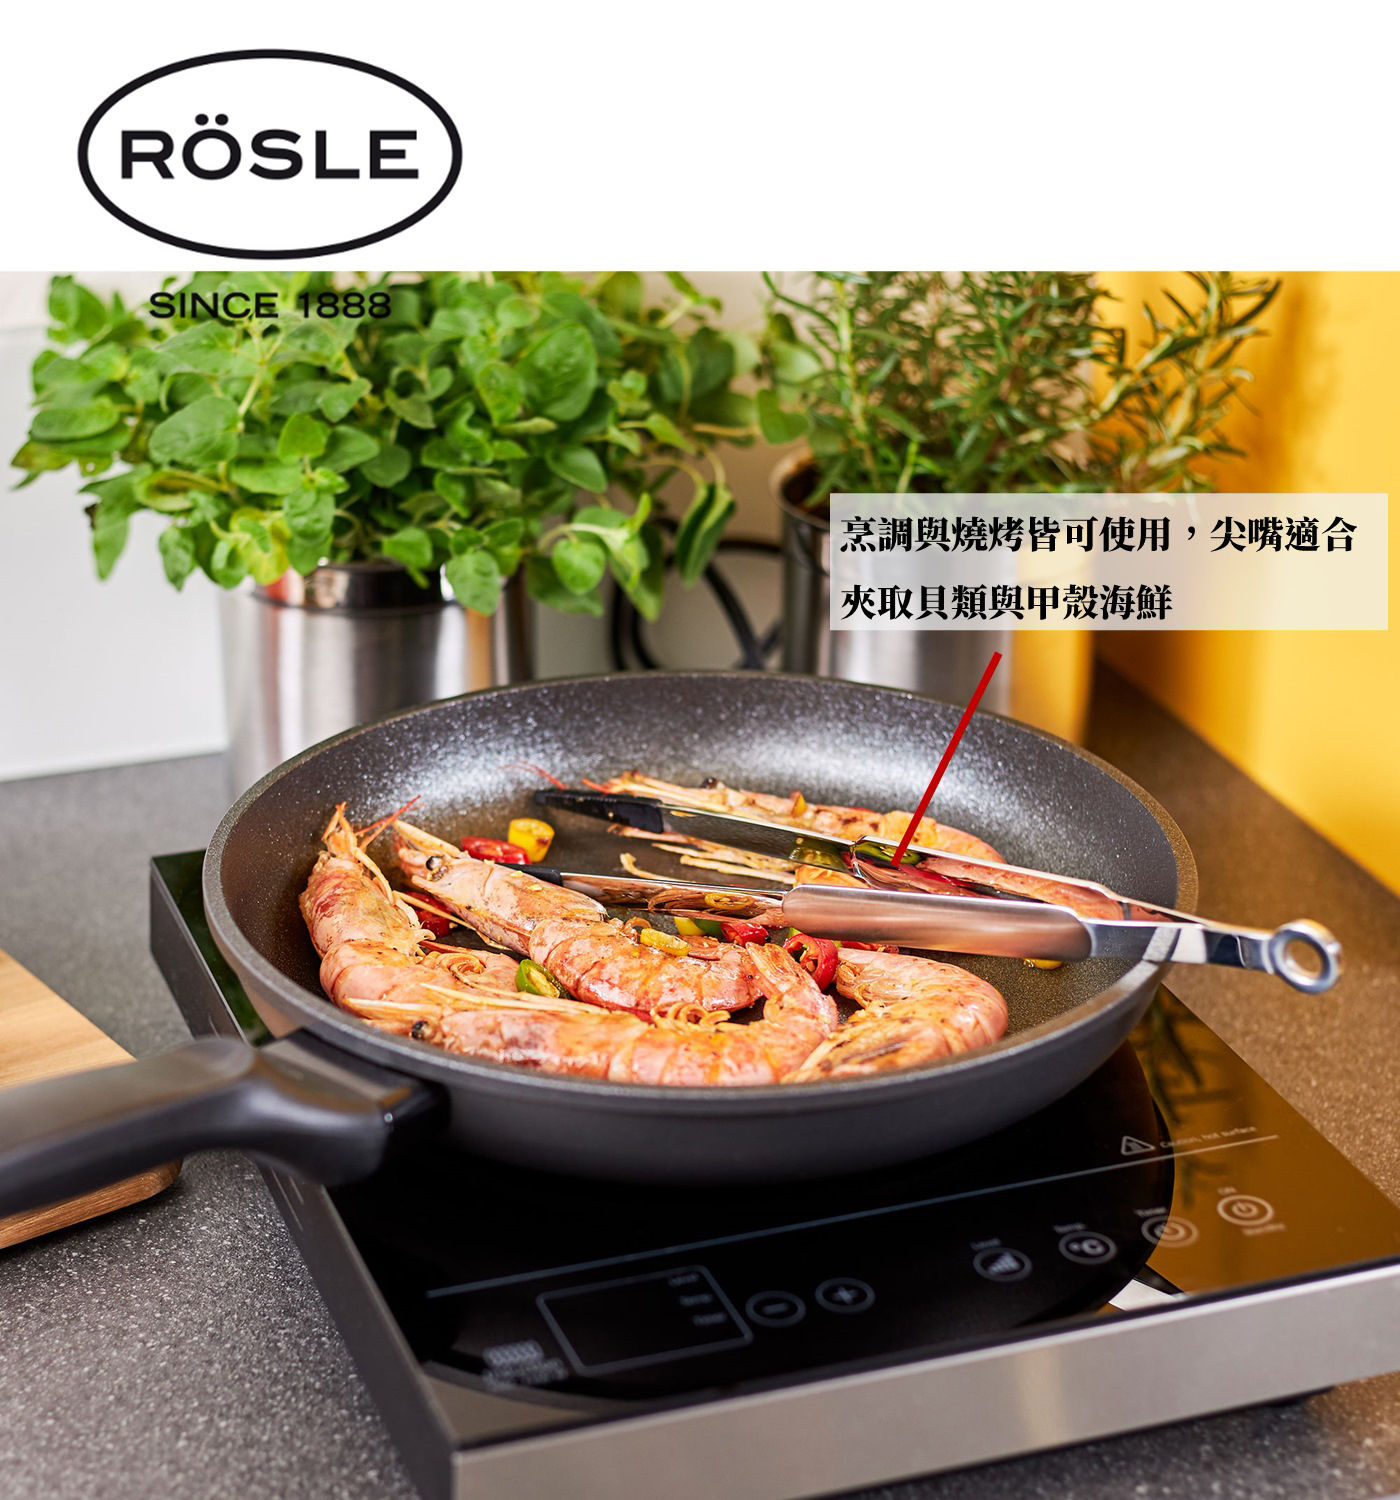 Rosle掛環式矽膠尖嘴夾烹調與燒烤皆可使用.尖嘴適合夾取貝類與甲殼海鮮